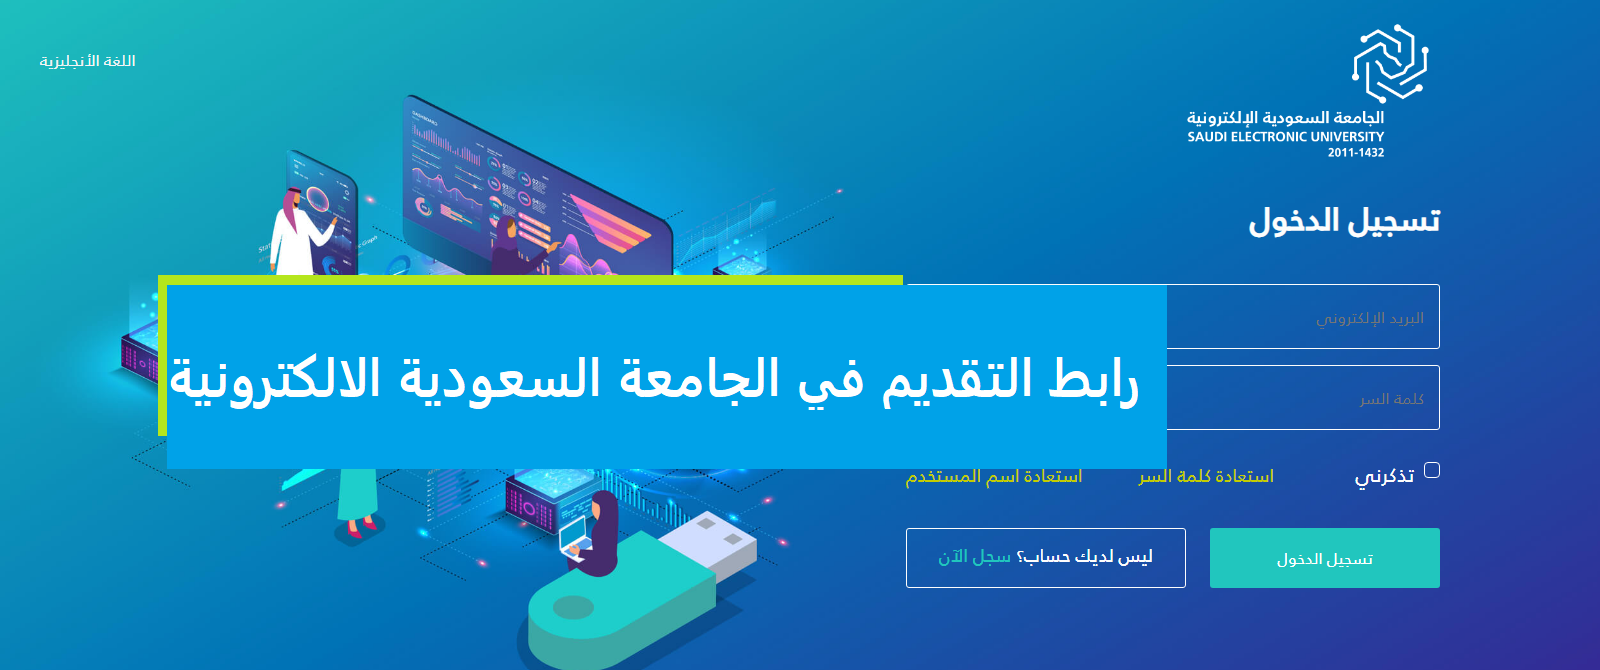 رابط التقديم في الجامعة السعودية الالكترونية